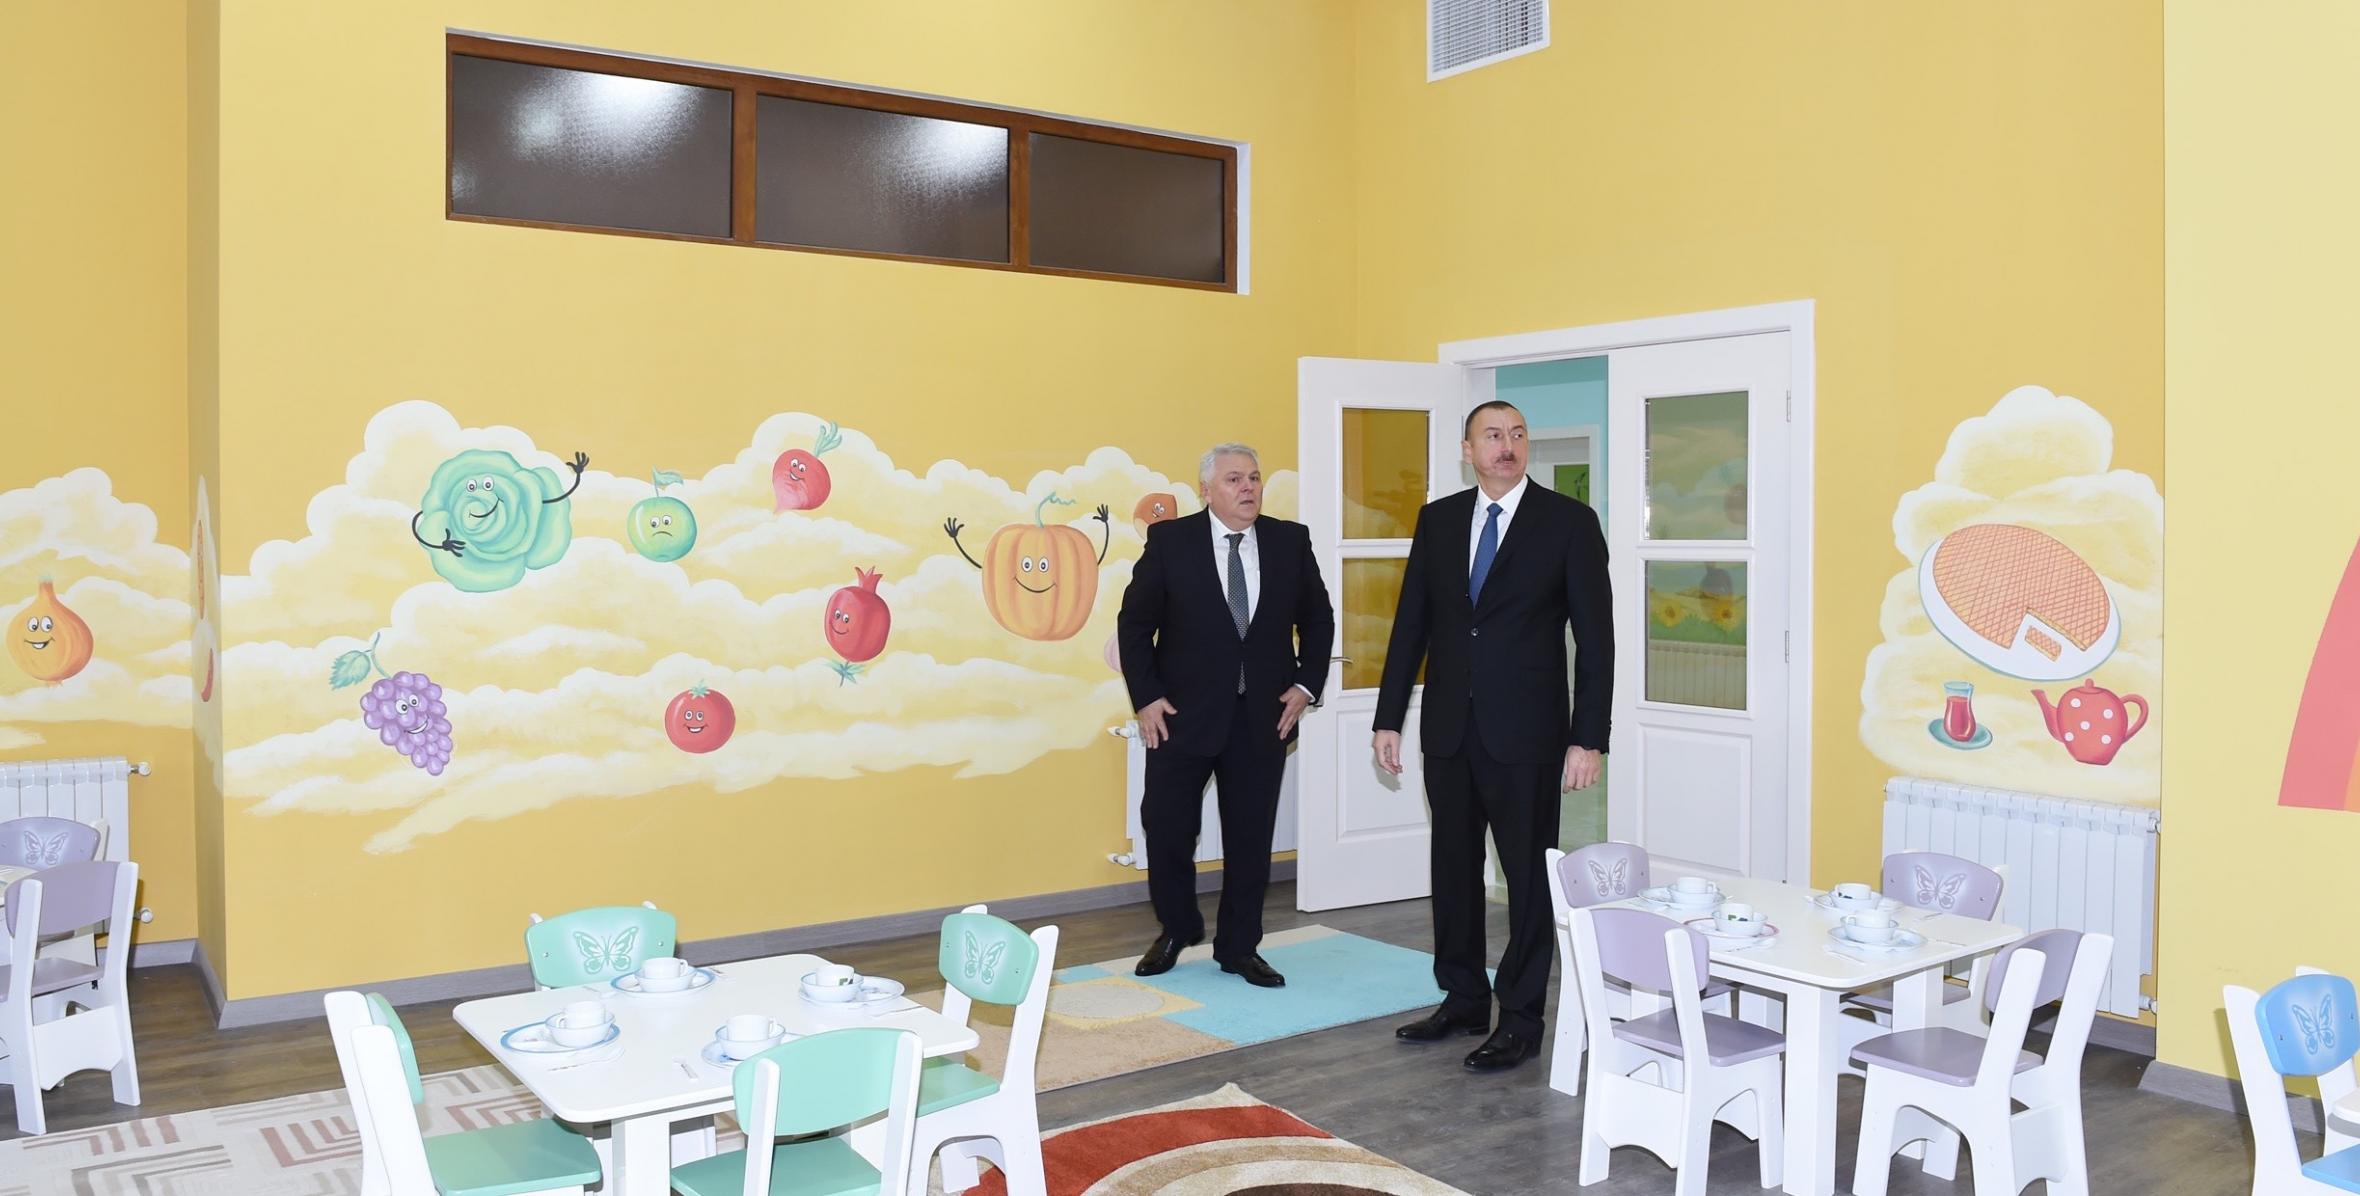 Ильхам Алиев принял участие в открытии яслей-детского сада на 160 мест, построенного в Шеки по инициативе Фонда Гейдара Алиева